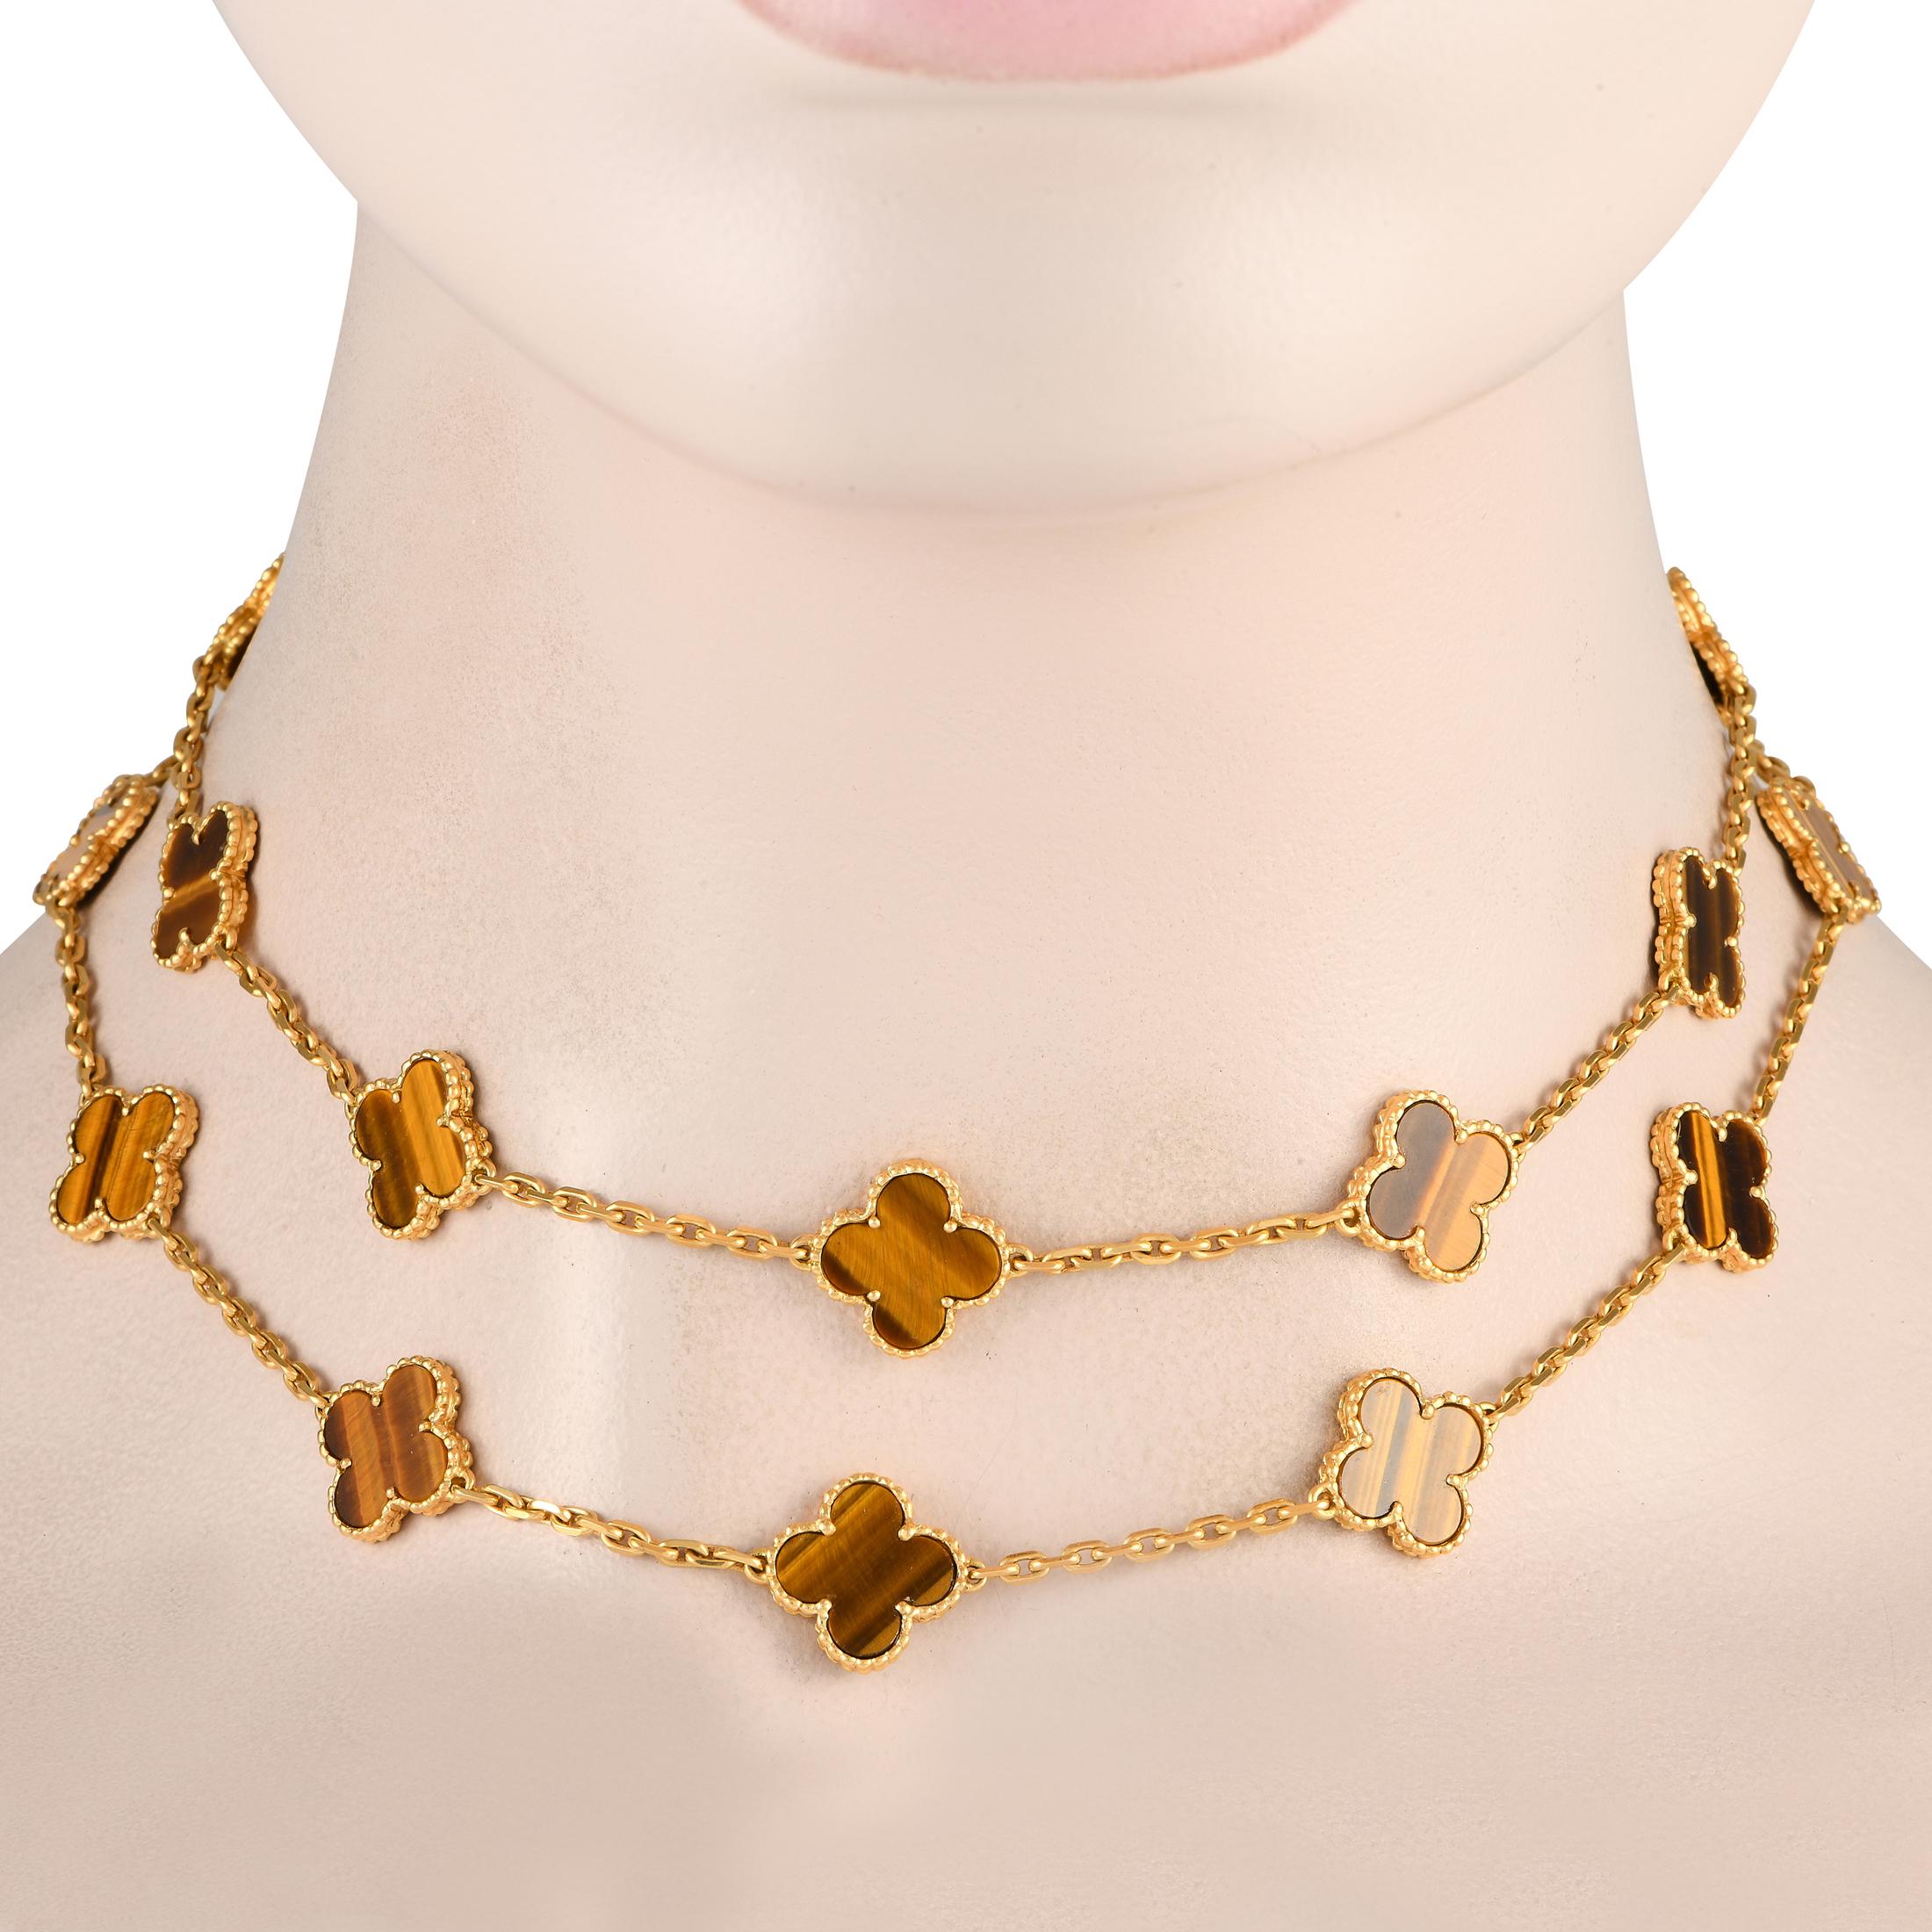 Ce collier Van Cleef & Arpels Vintage Alhambra est parfait pour la fashionista exigeante à la personnalité féroce. Ce collier d'une élégance implacable est réalisé en or jaune 18 carats et présente 20 motifs de l'Alhambra, chacun avec une